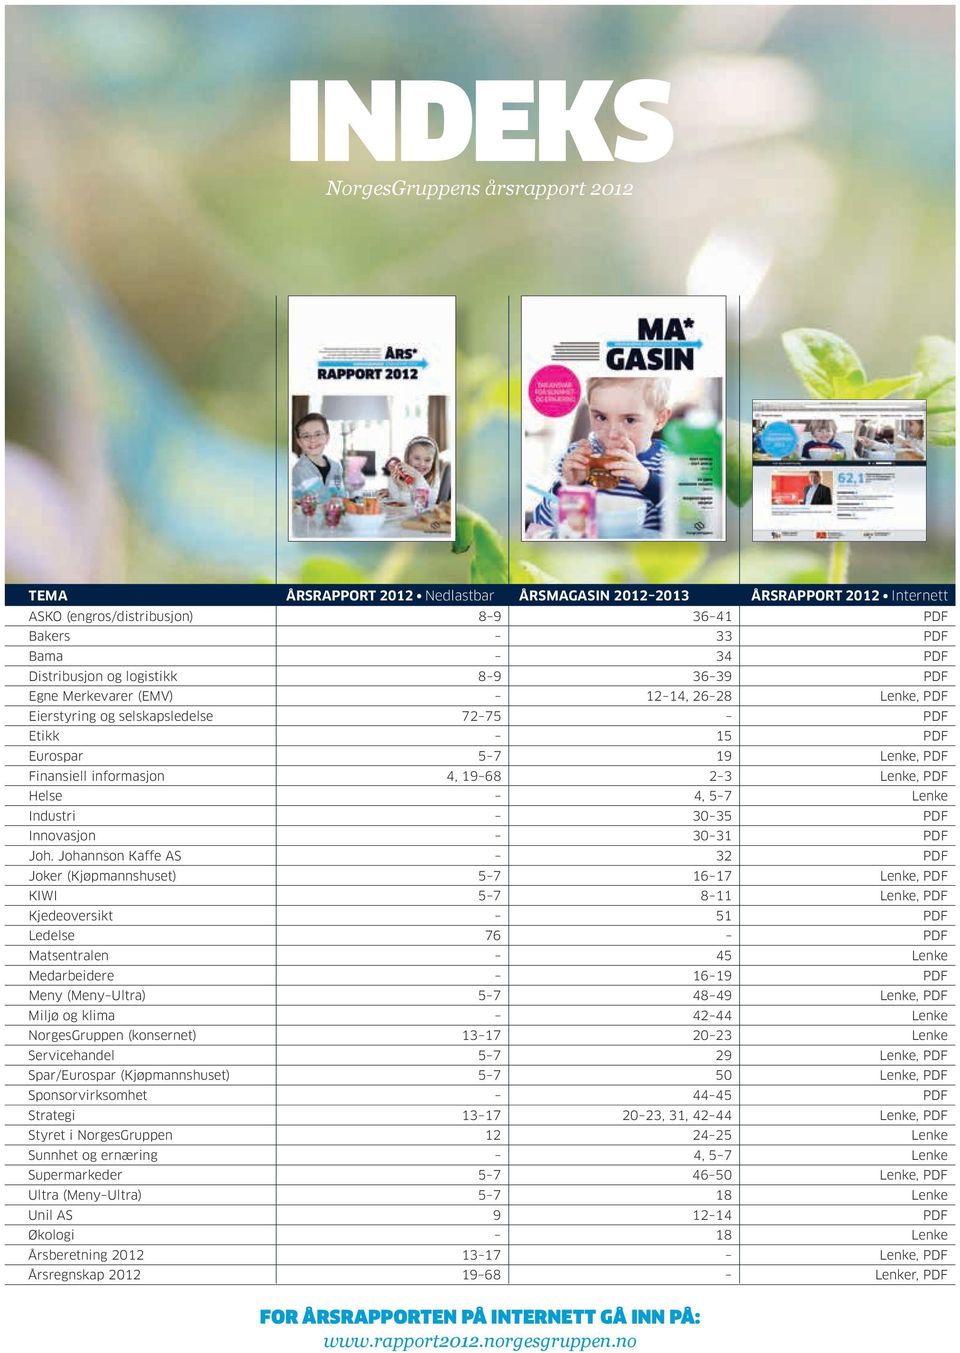 Helse 4, 5 7 Lenke Industri 30 35 PDF Innovasjon 30 31 PDF Joh.